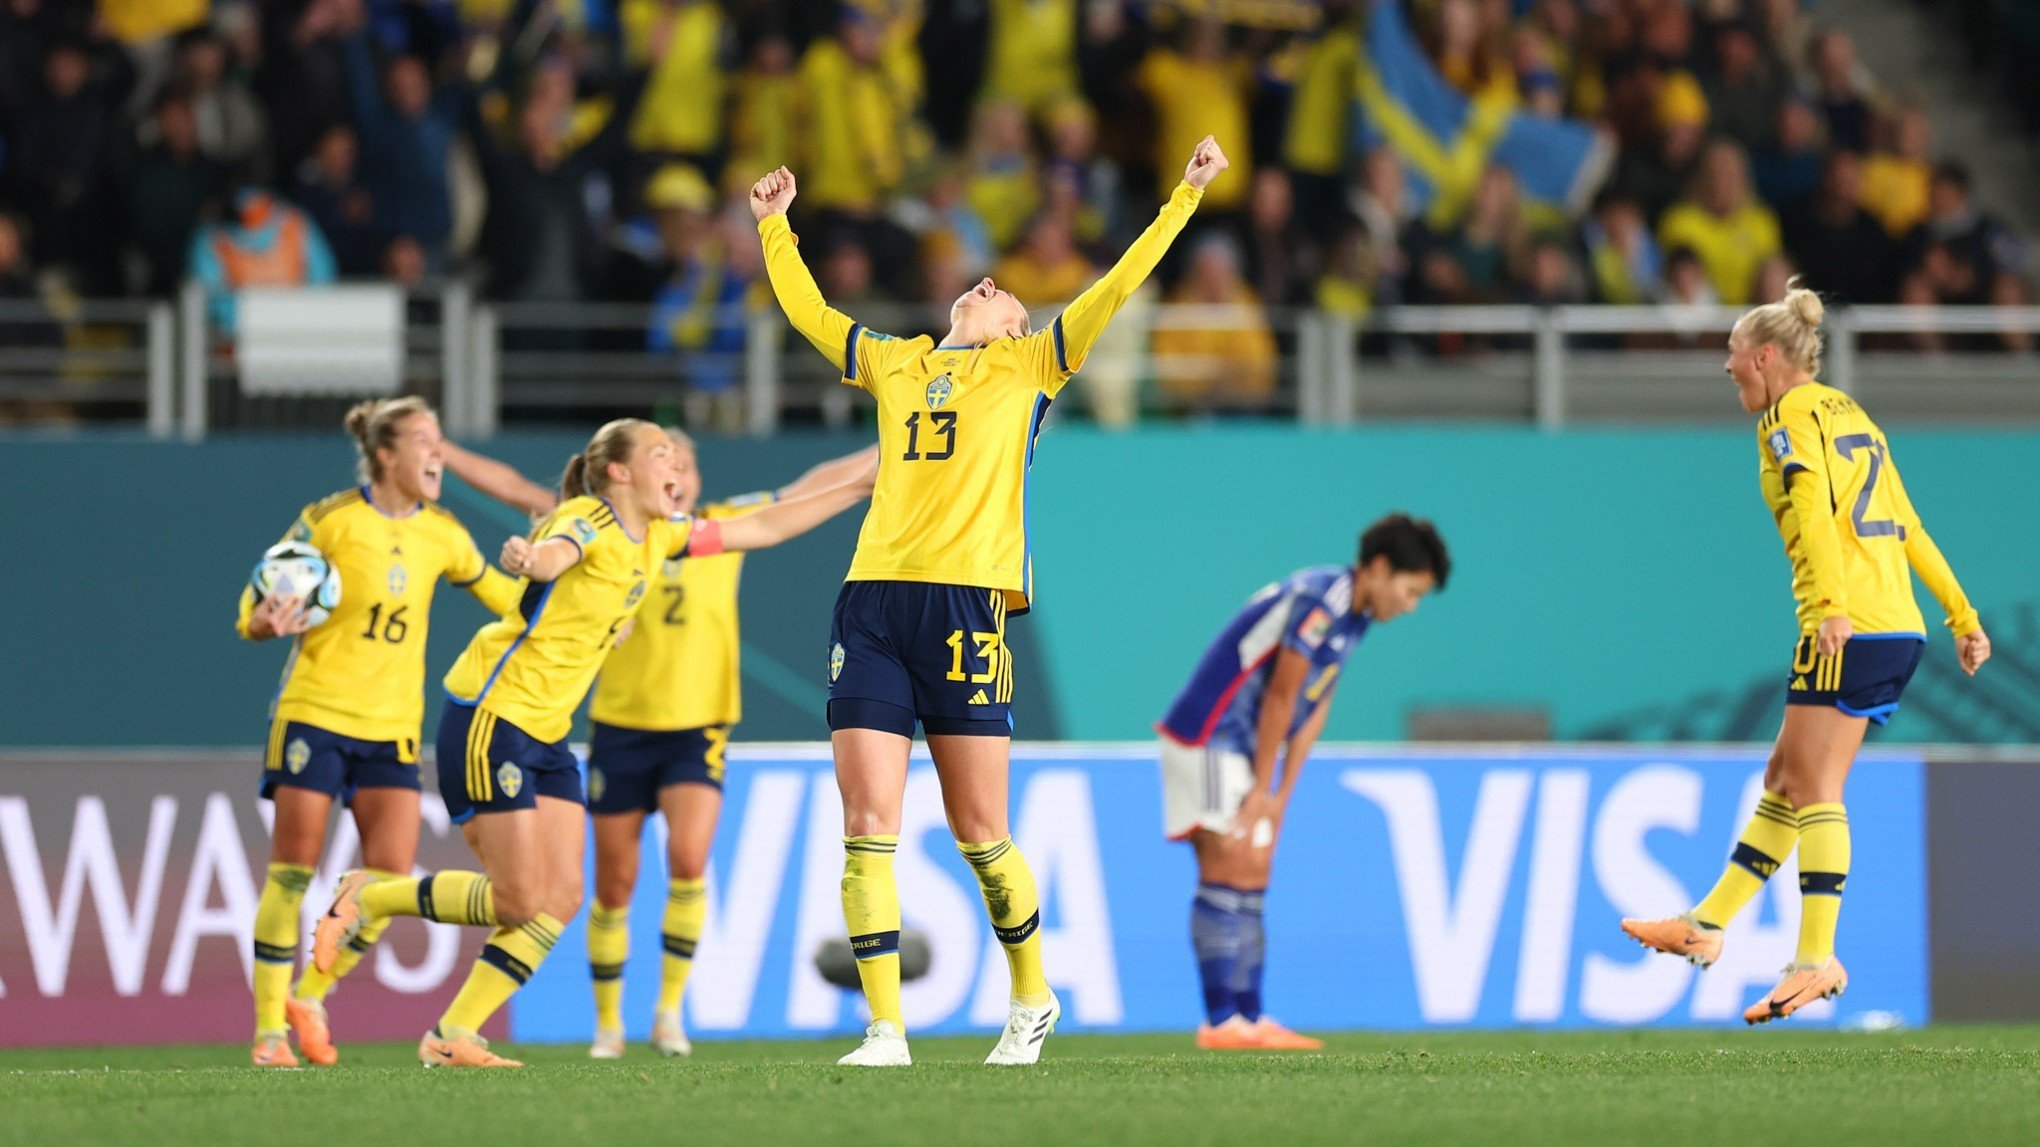 Suécia vence o Japão para manter vivo o sonho do título mundial